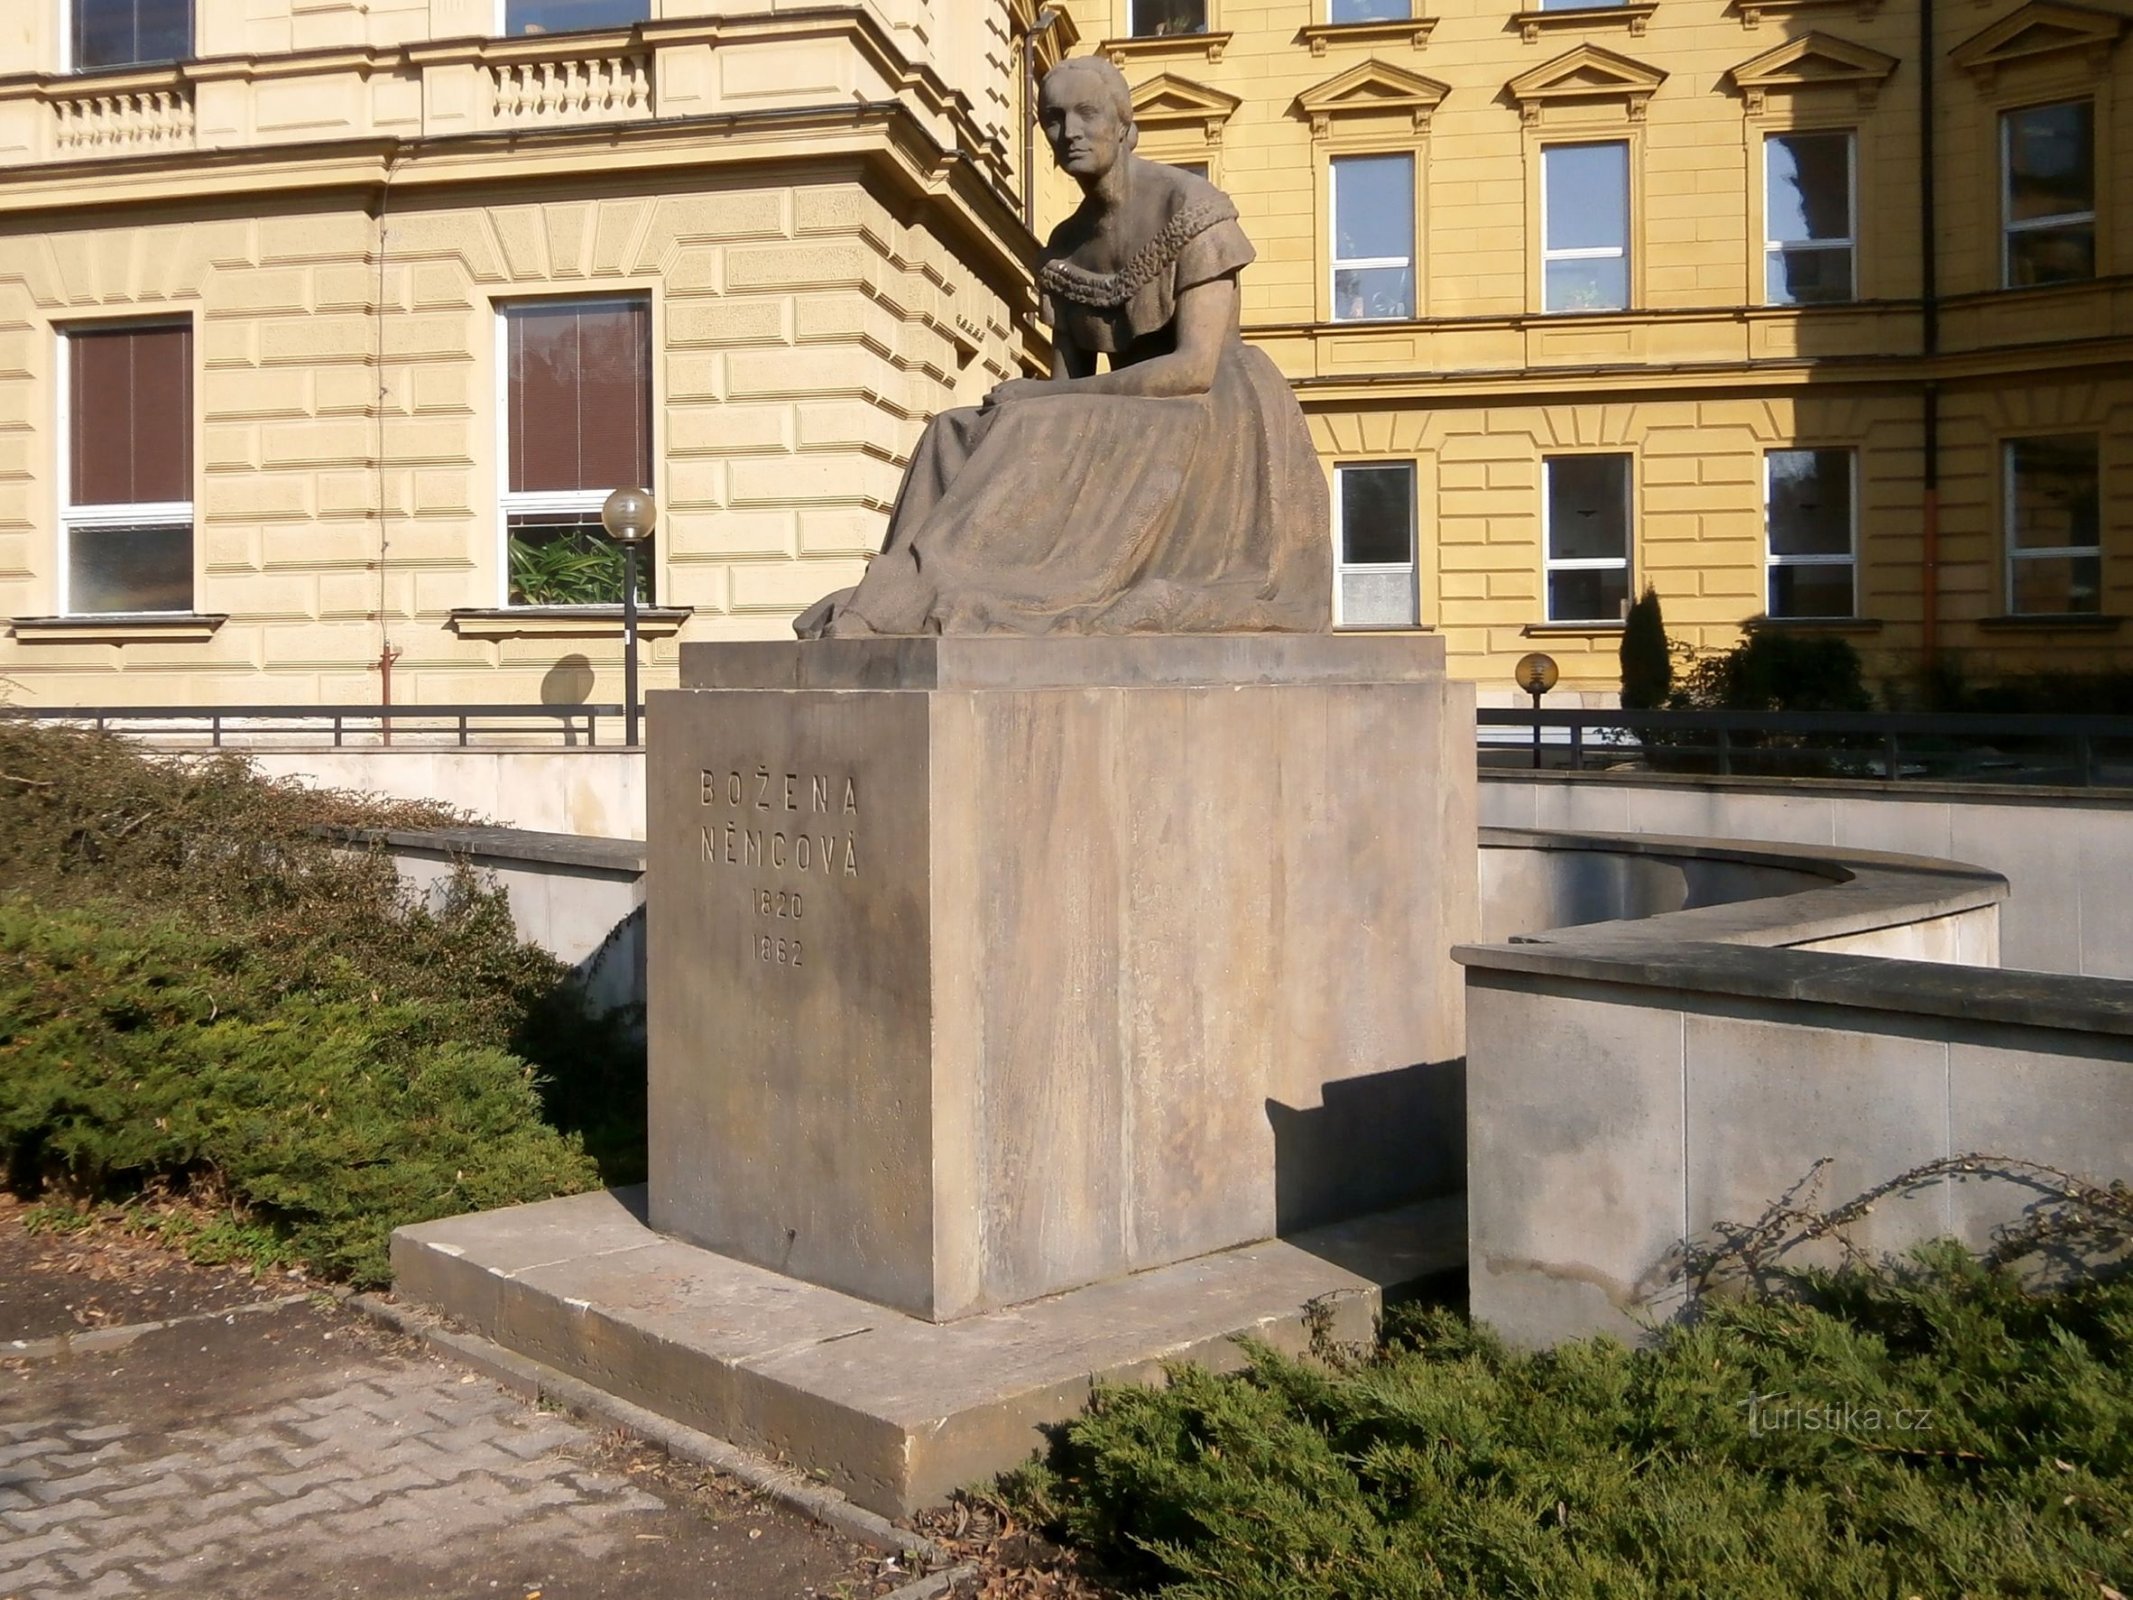 Bozena Němcová の記念碑 (Hradec Králové、26.3.2014 年 XNUMX 月 XNUMX 日)